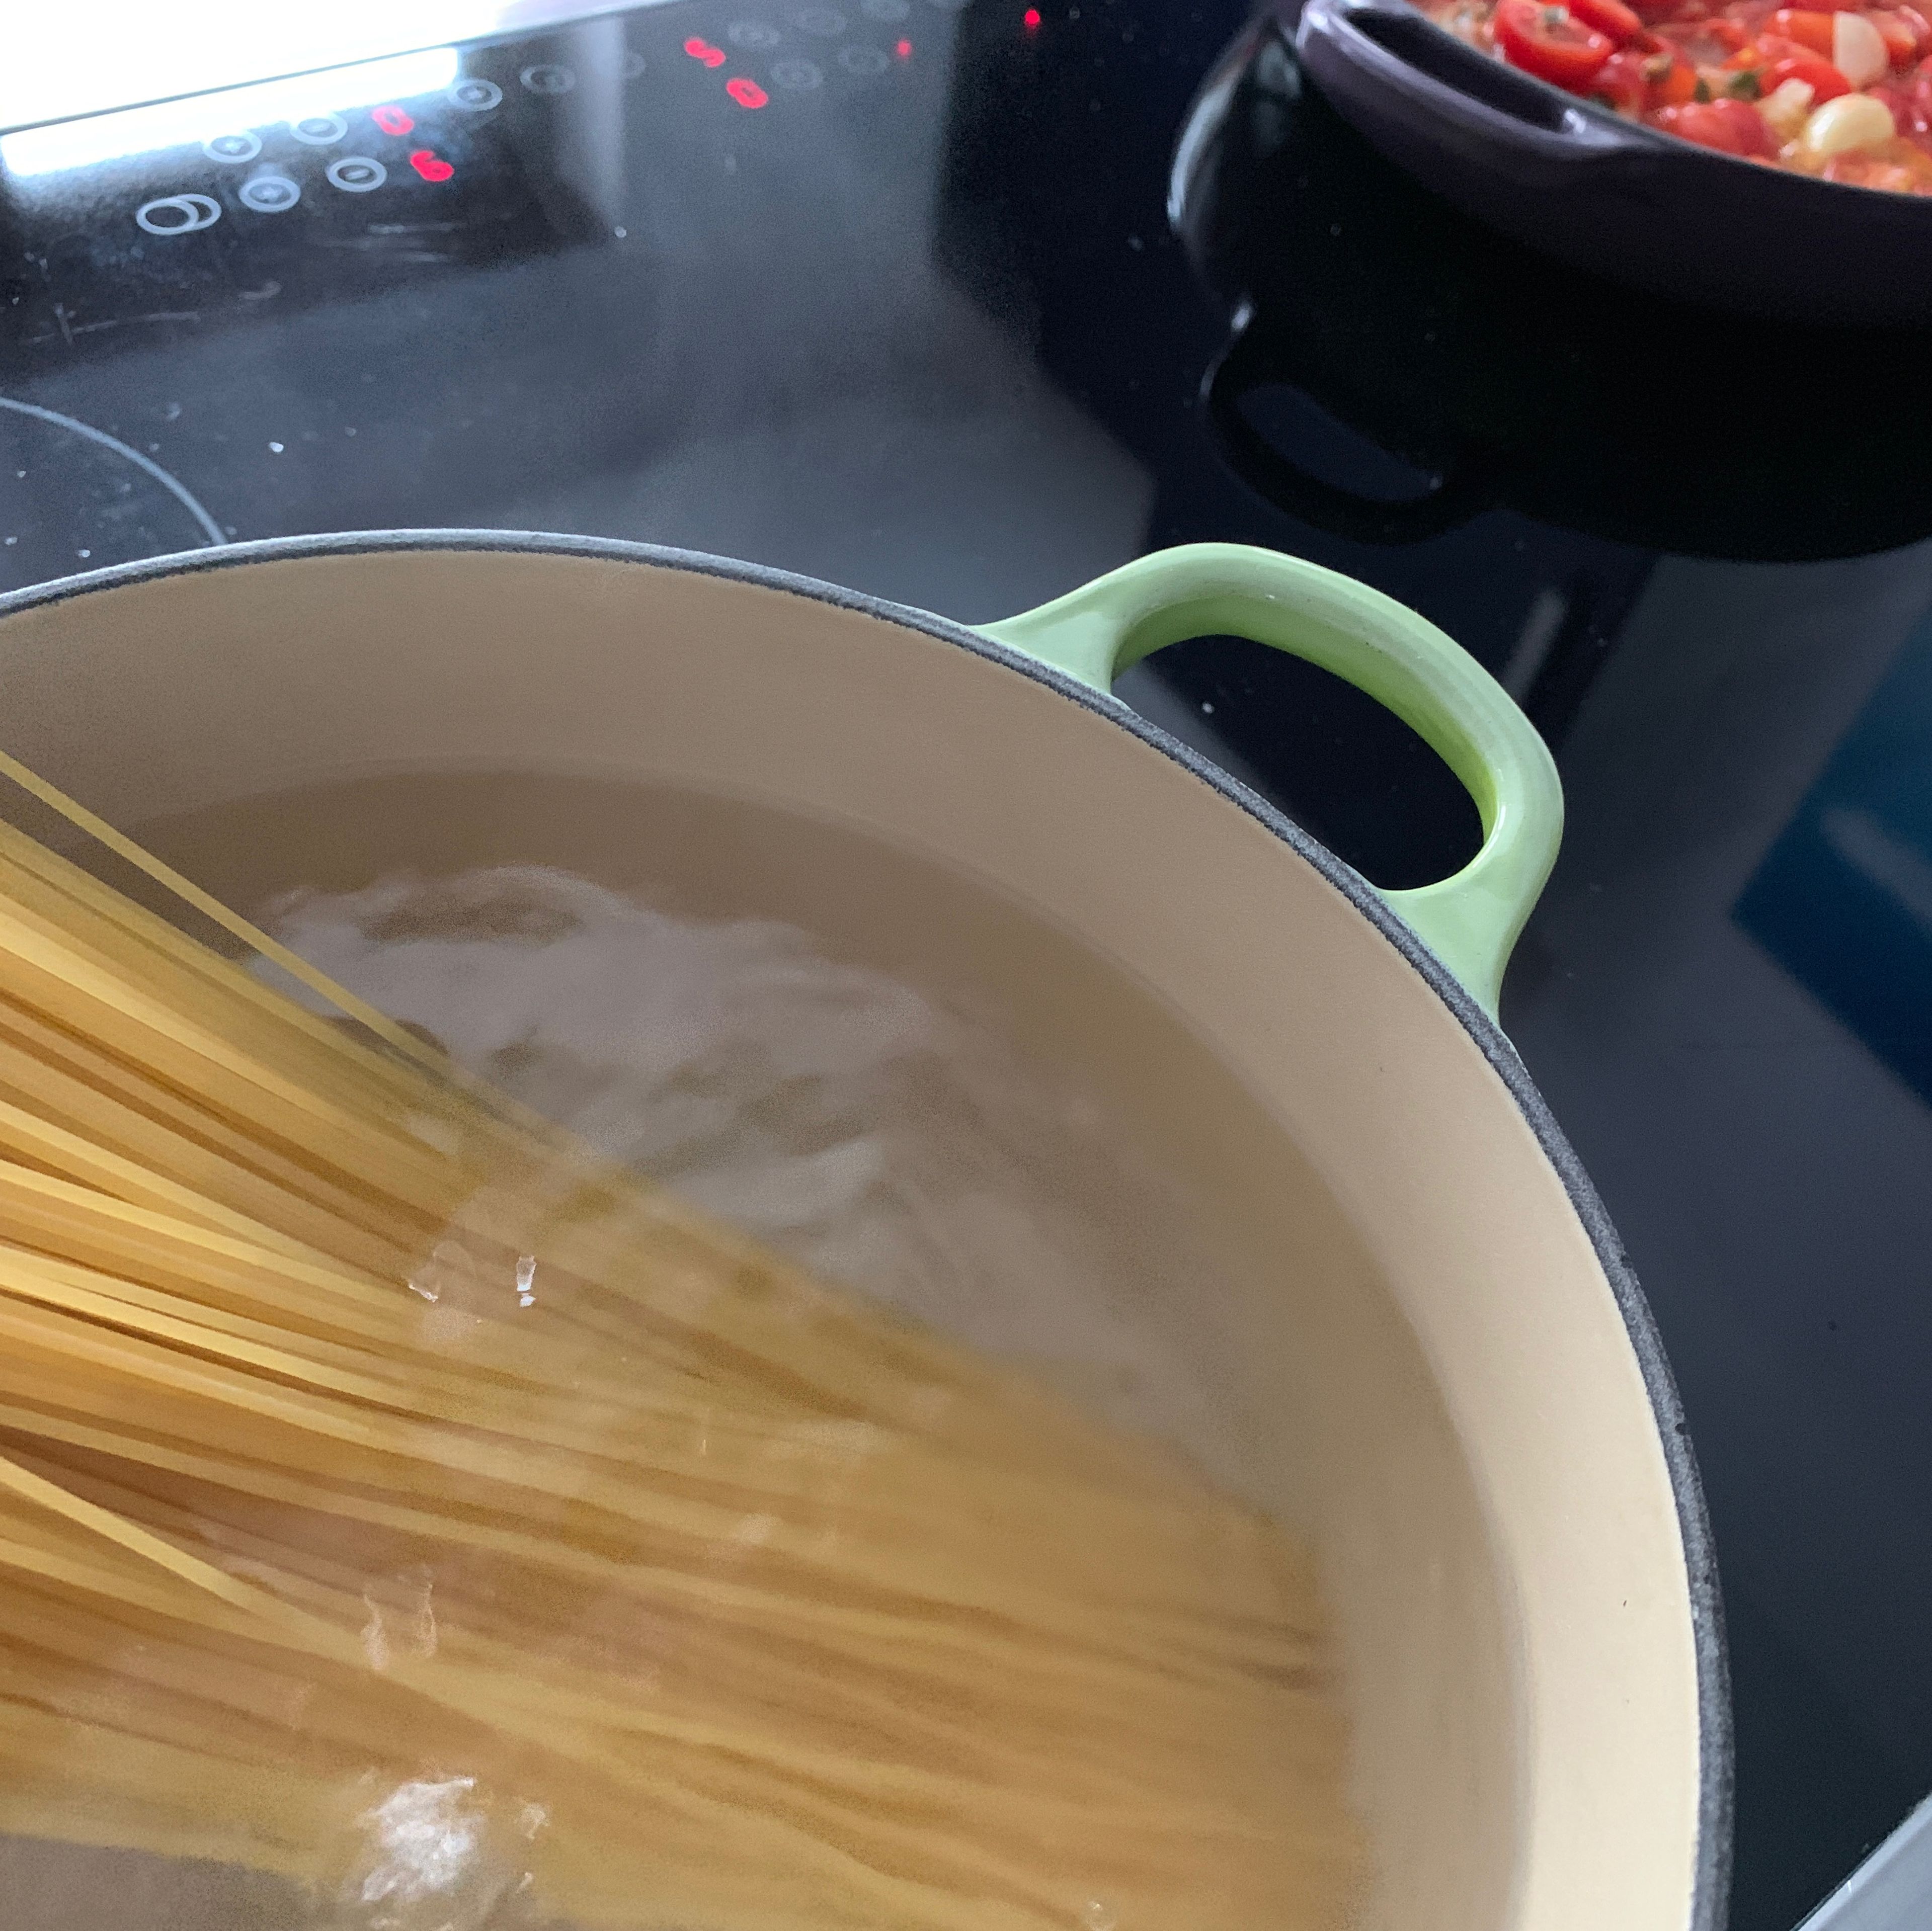 Spaghetti nach Packungsanleitung 10-12 Minuten al dente kochen. Anschließend die Nudeln abgießen.